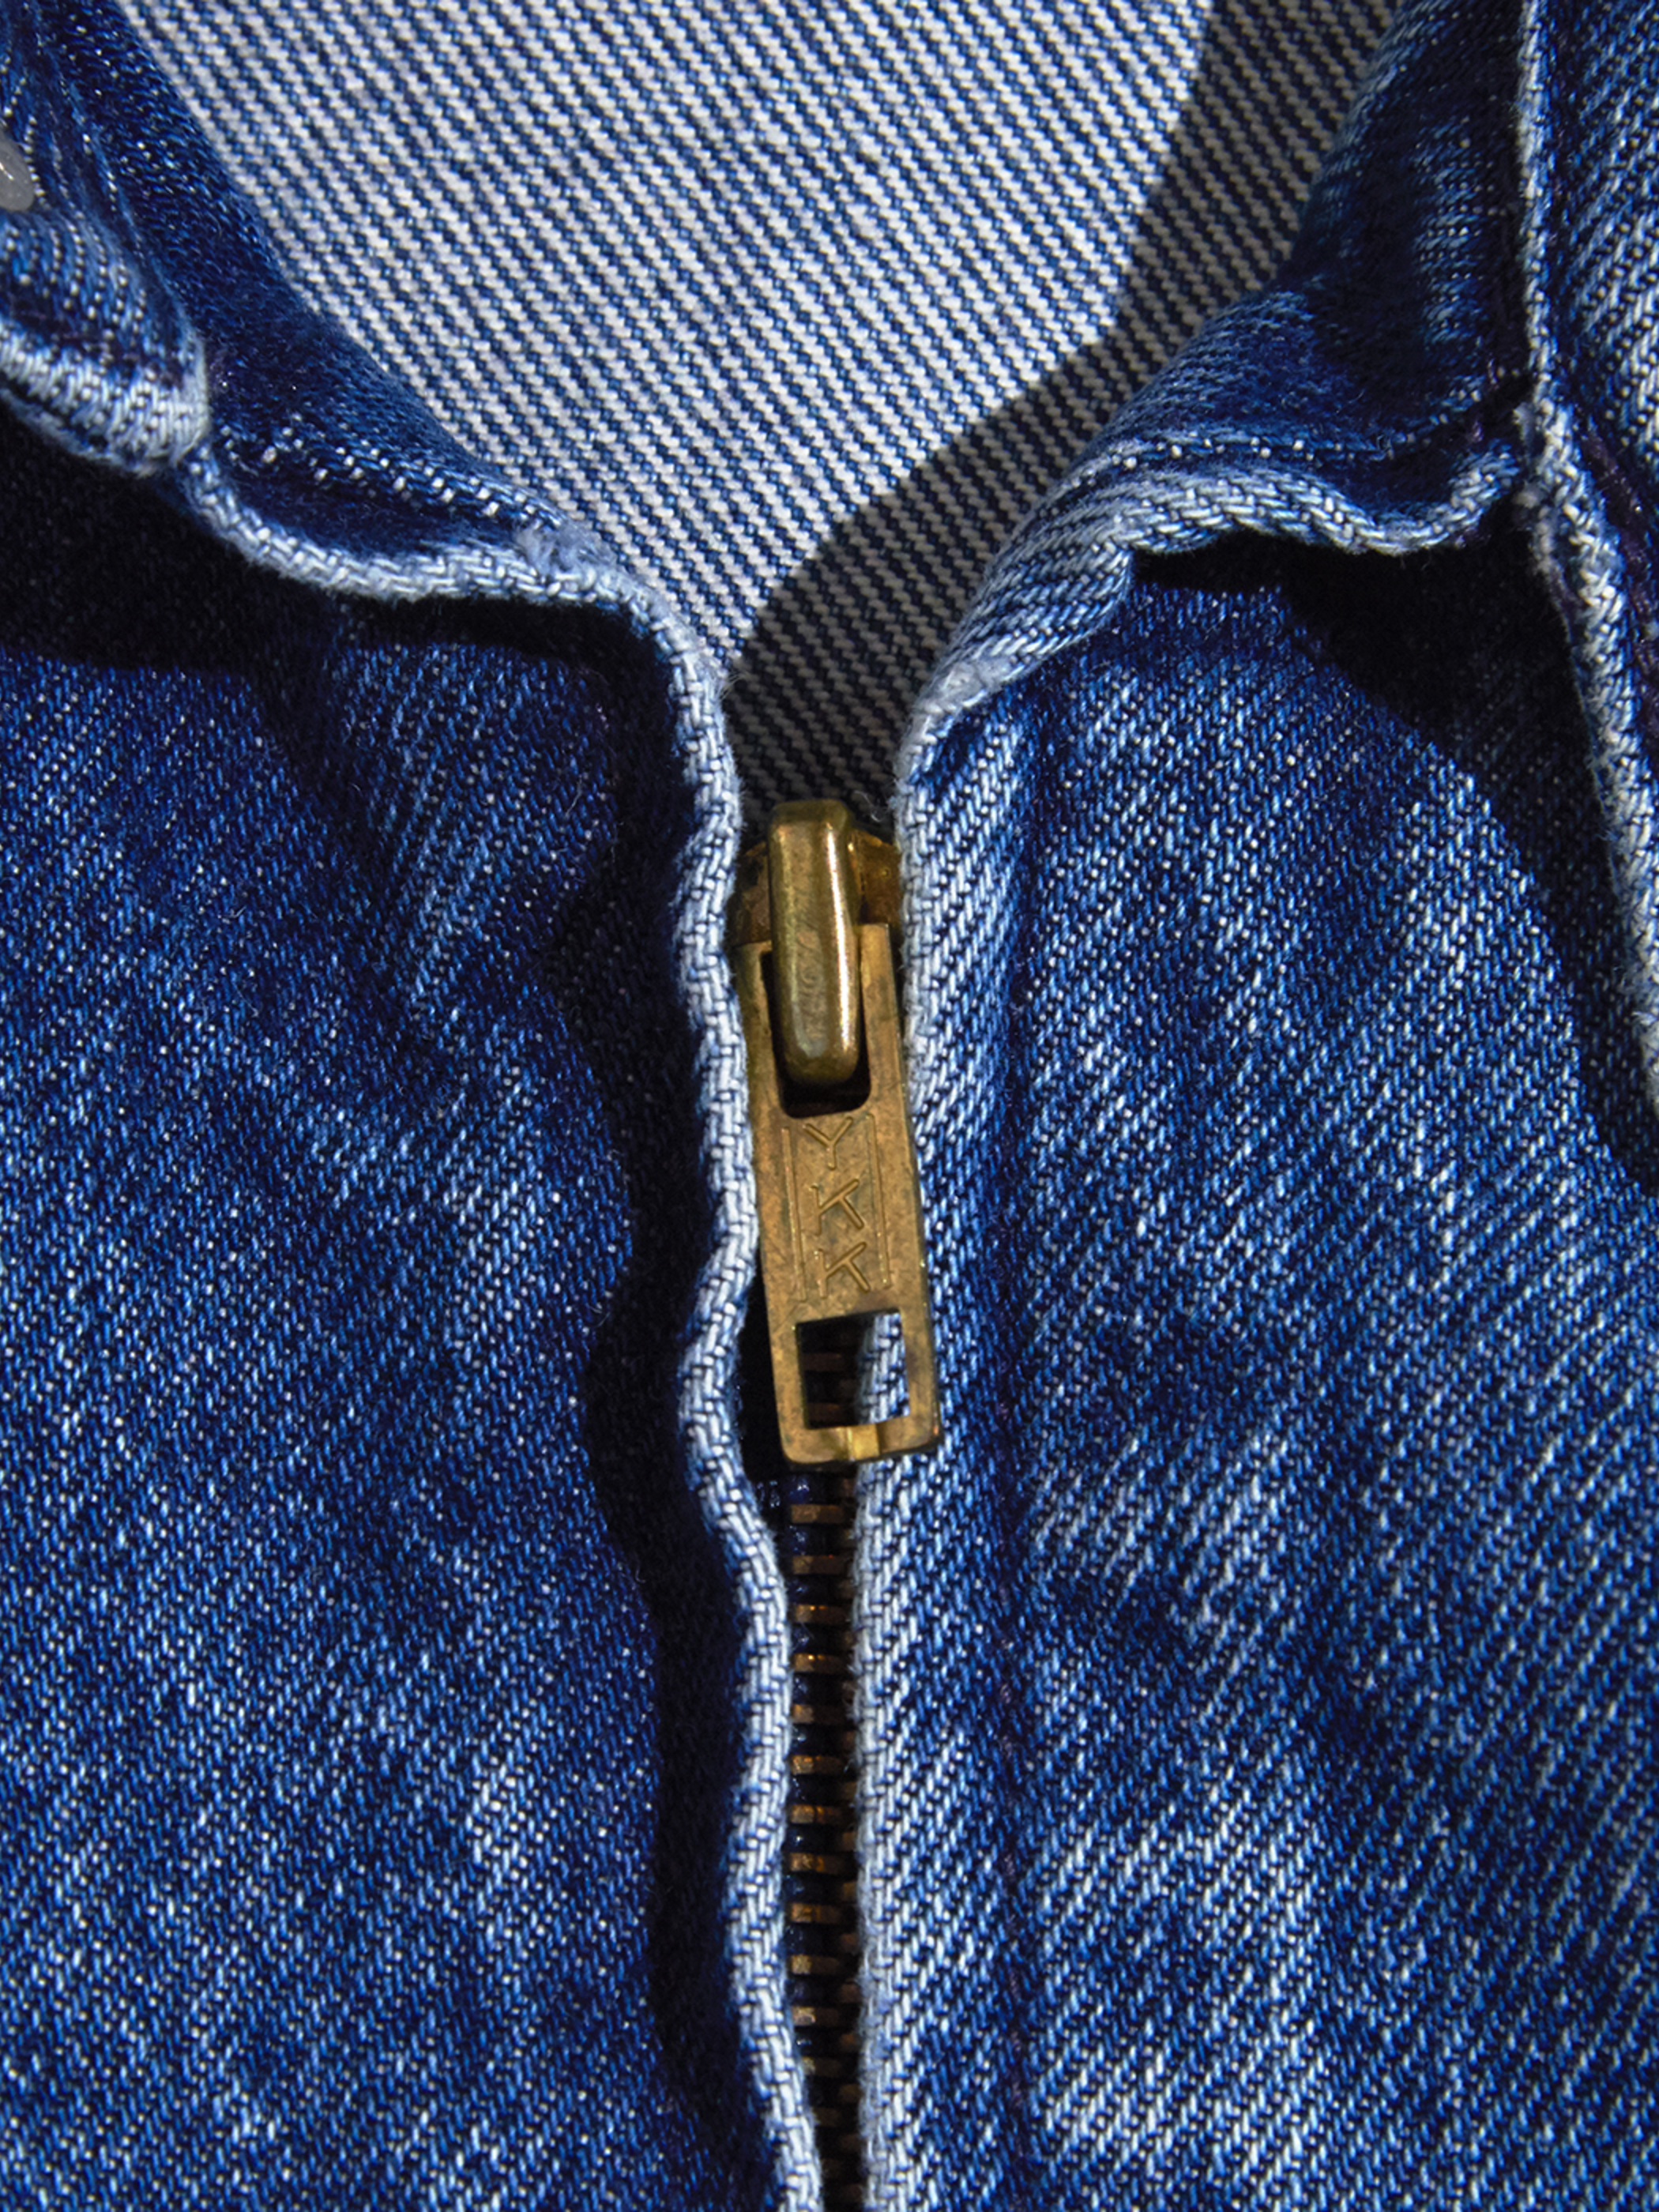 1980s "Polo by Ralph Lauren" denim drizzler jacket -INDIGO-